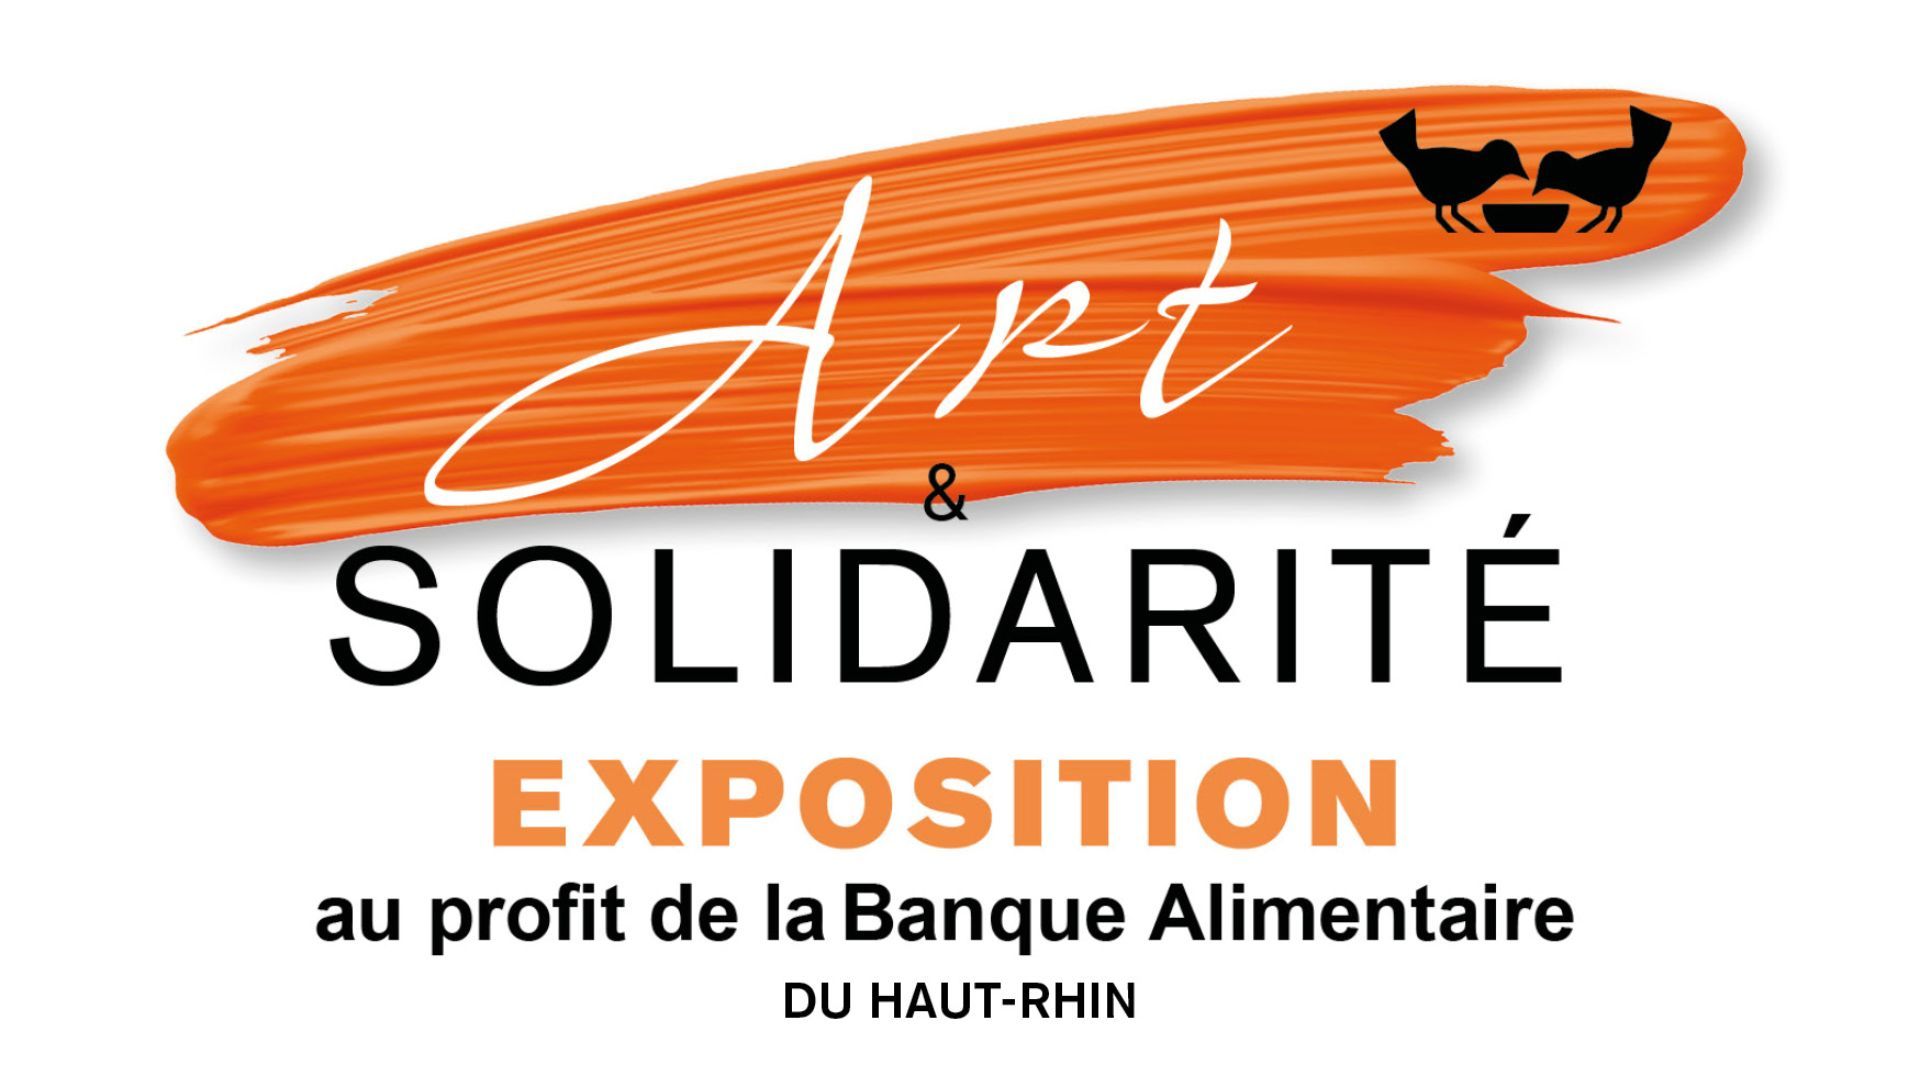 Expo-vente "Art et Solidarité" à Mulhouse